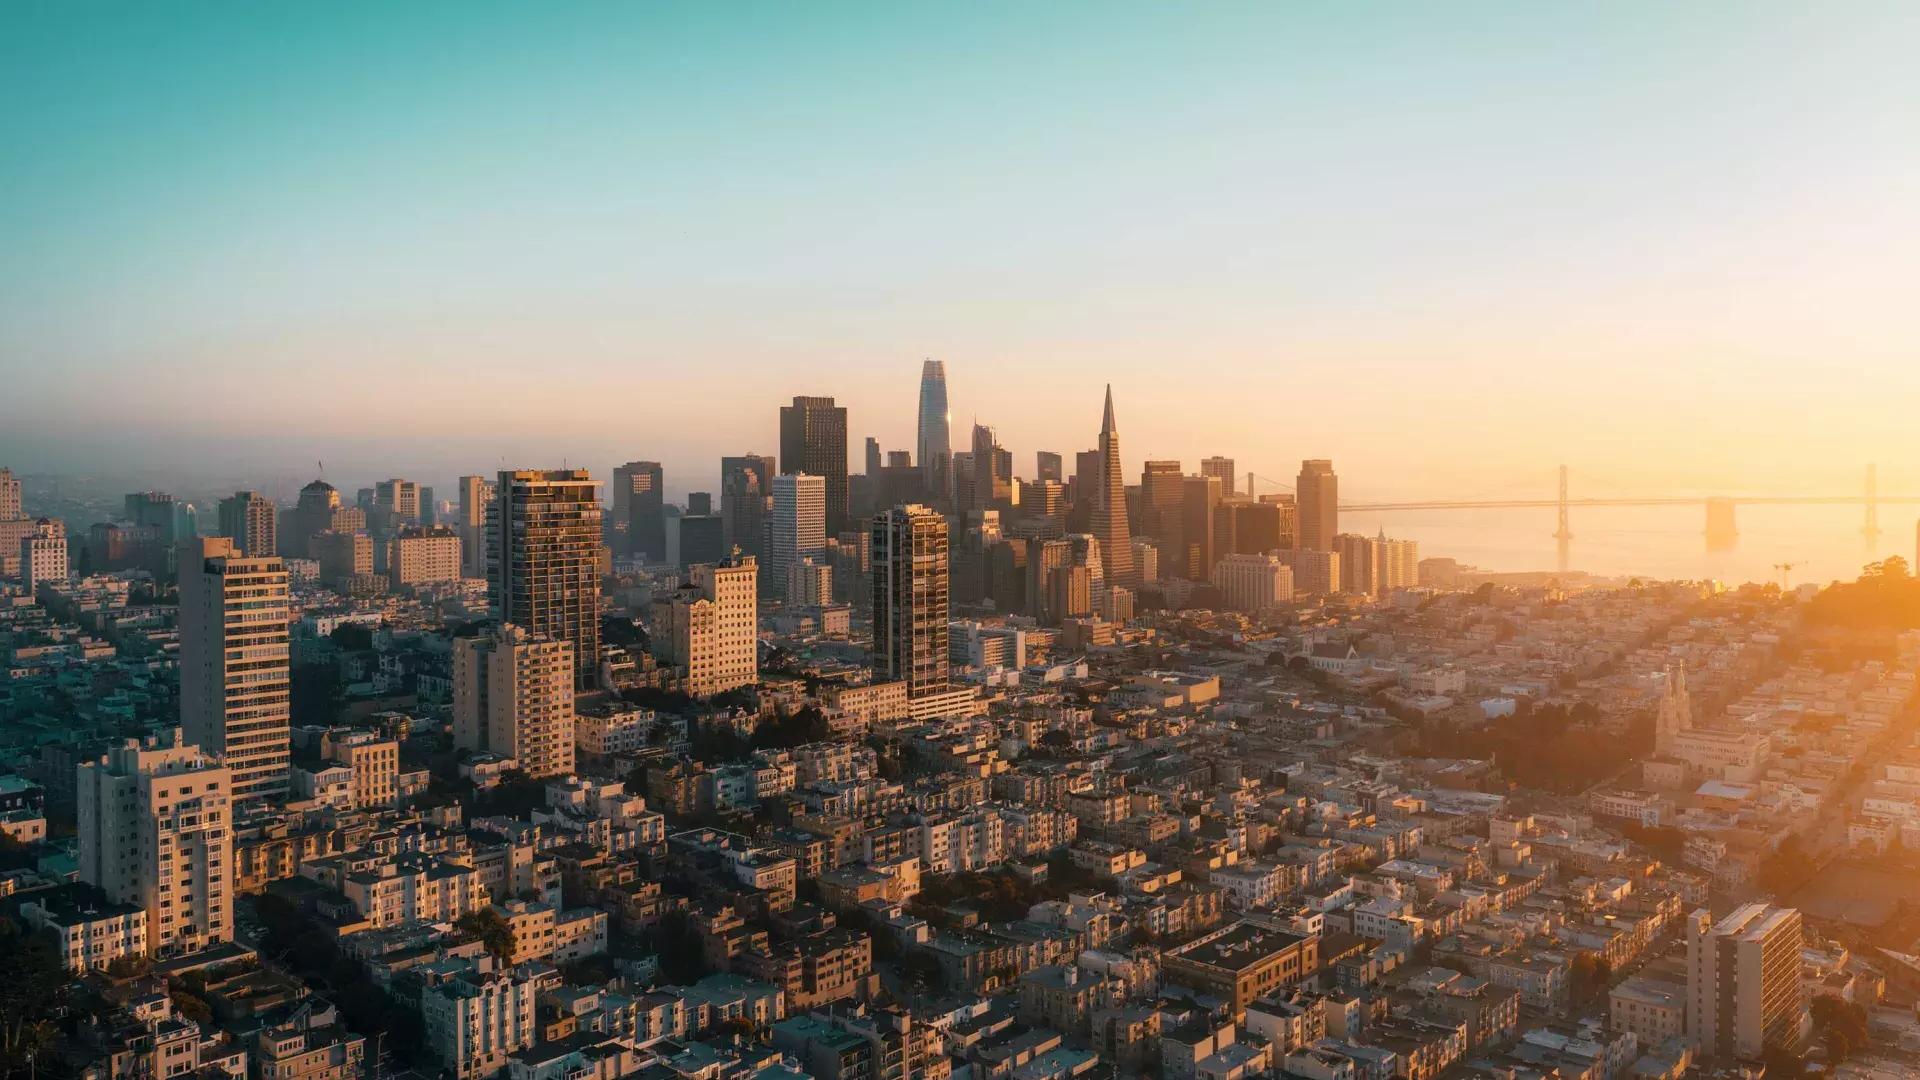 Die Skyline von San Francisco erscheint aus der Luft in goldenem Licht.